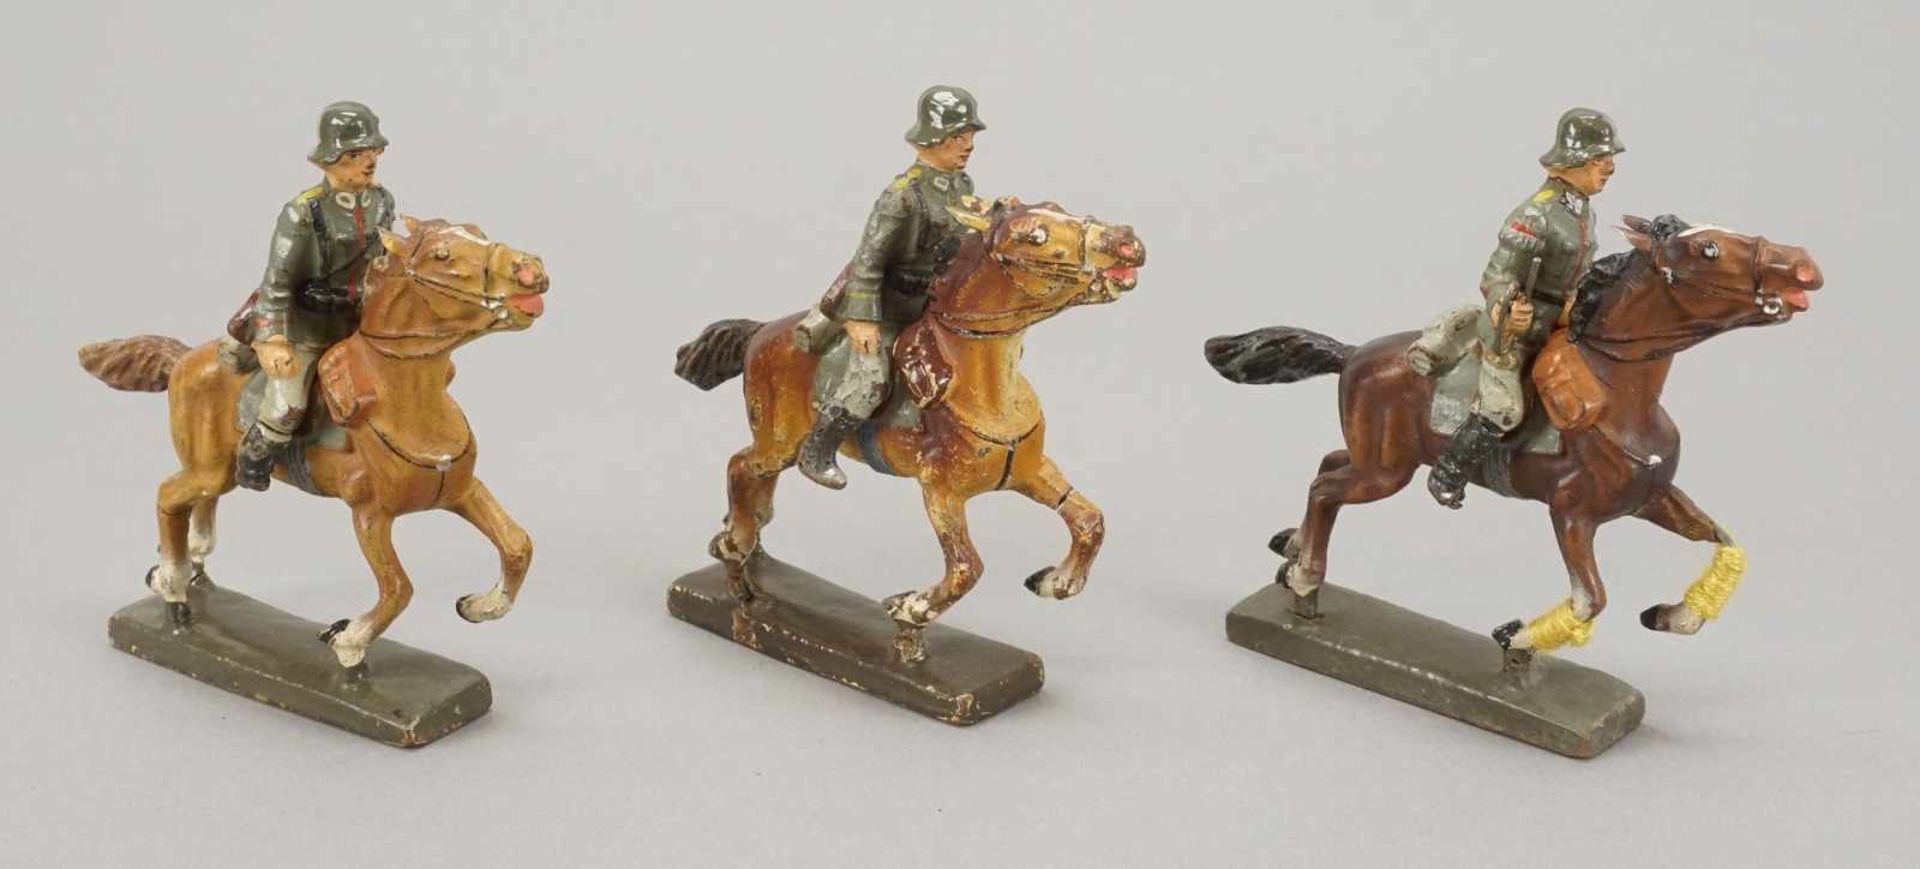 Sieben Lineol Wehrmacht Kavallerie-Soldaten mit Karabiner auf Pferd, um 1940 - Bild 4 aus 4